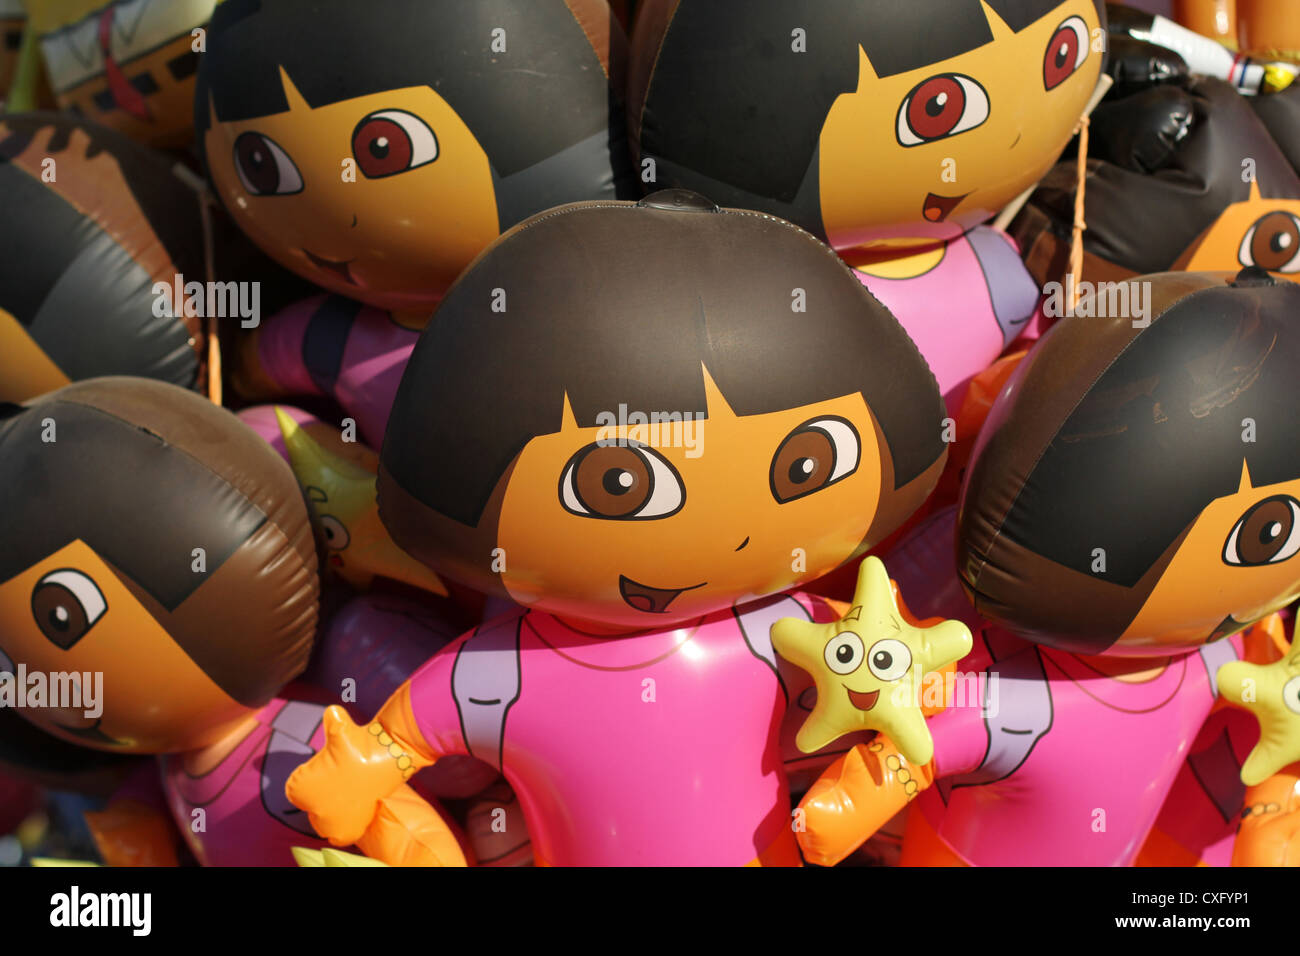 A bunch of Dora the Explorer balloons Stock Photo - Alamy